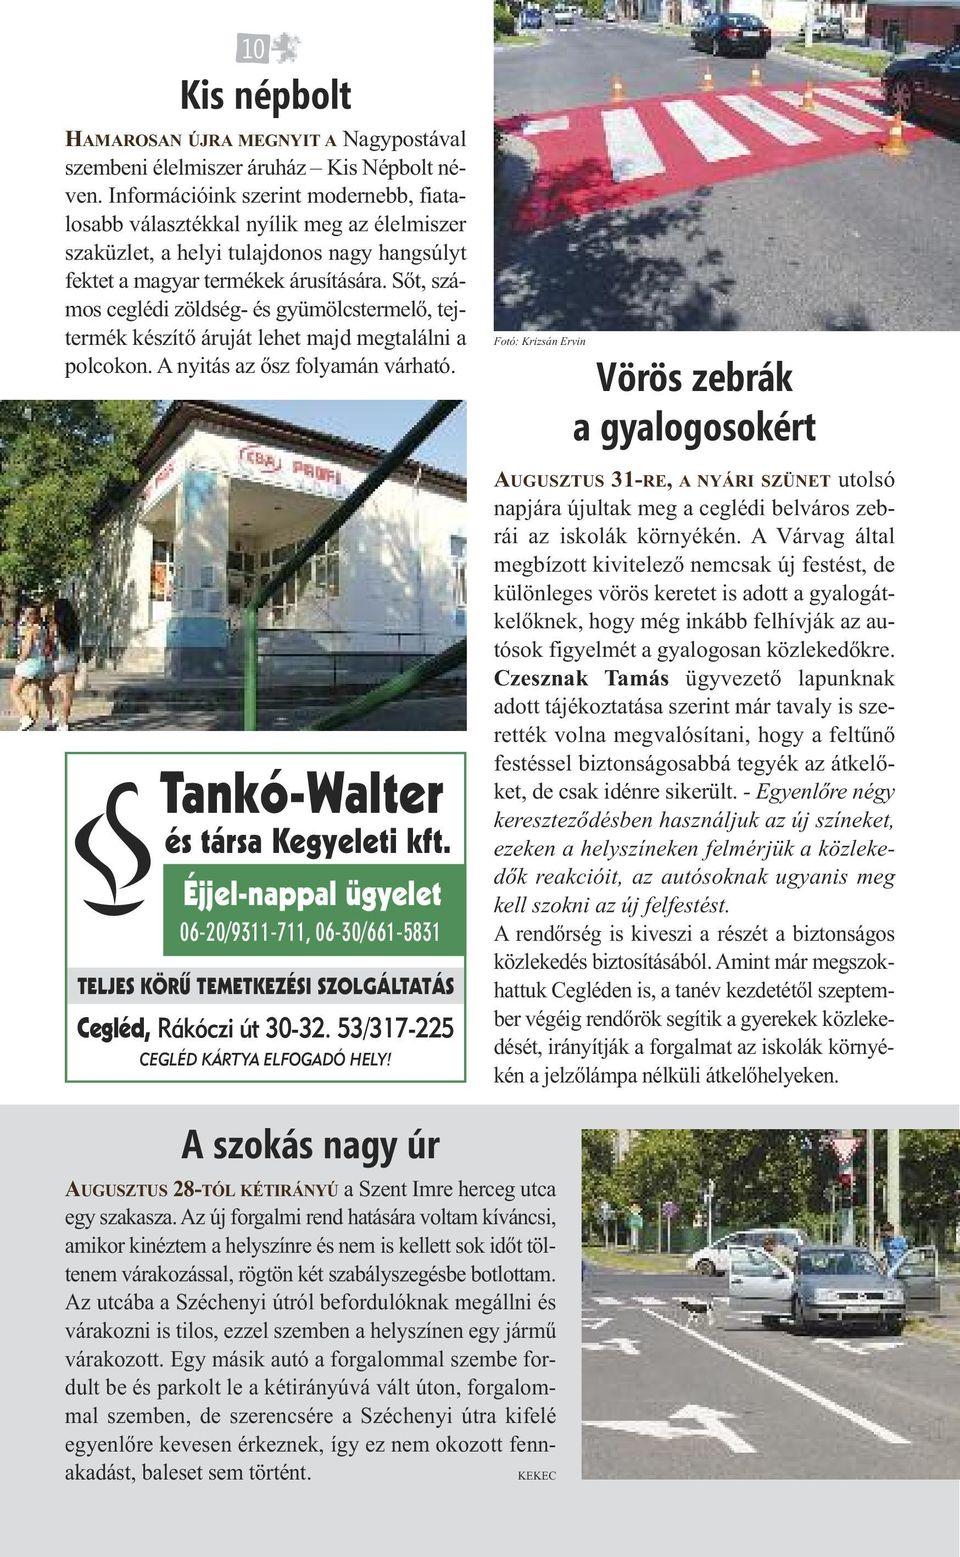 ÚJ MAZDA CX-3. Zakar és Társa Kft. - PDF Free Download